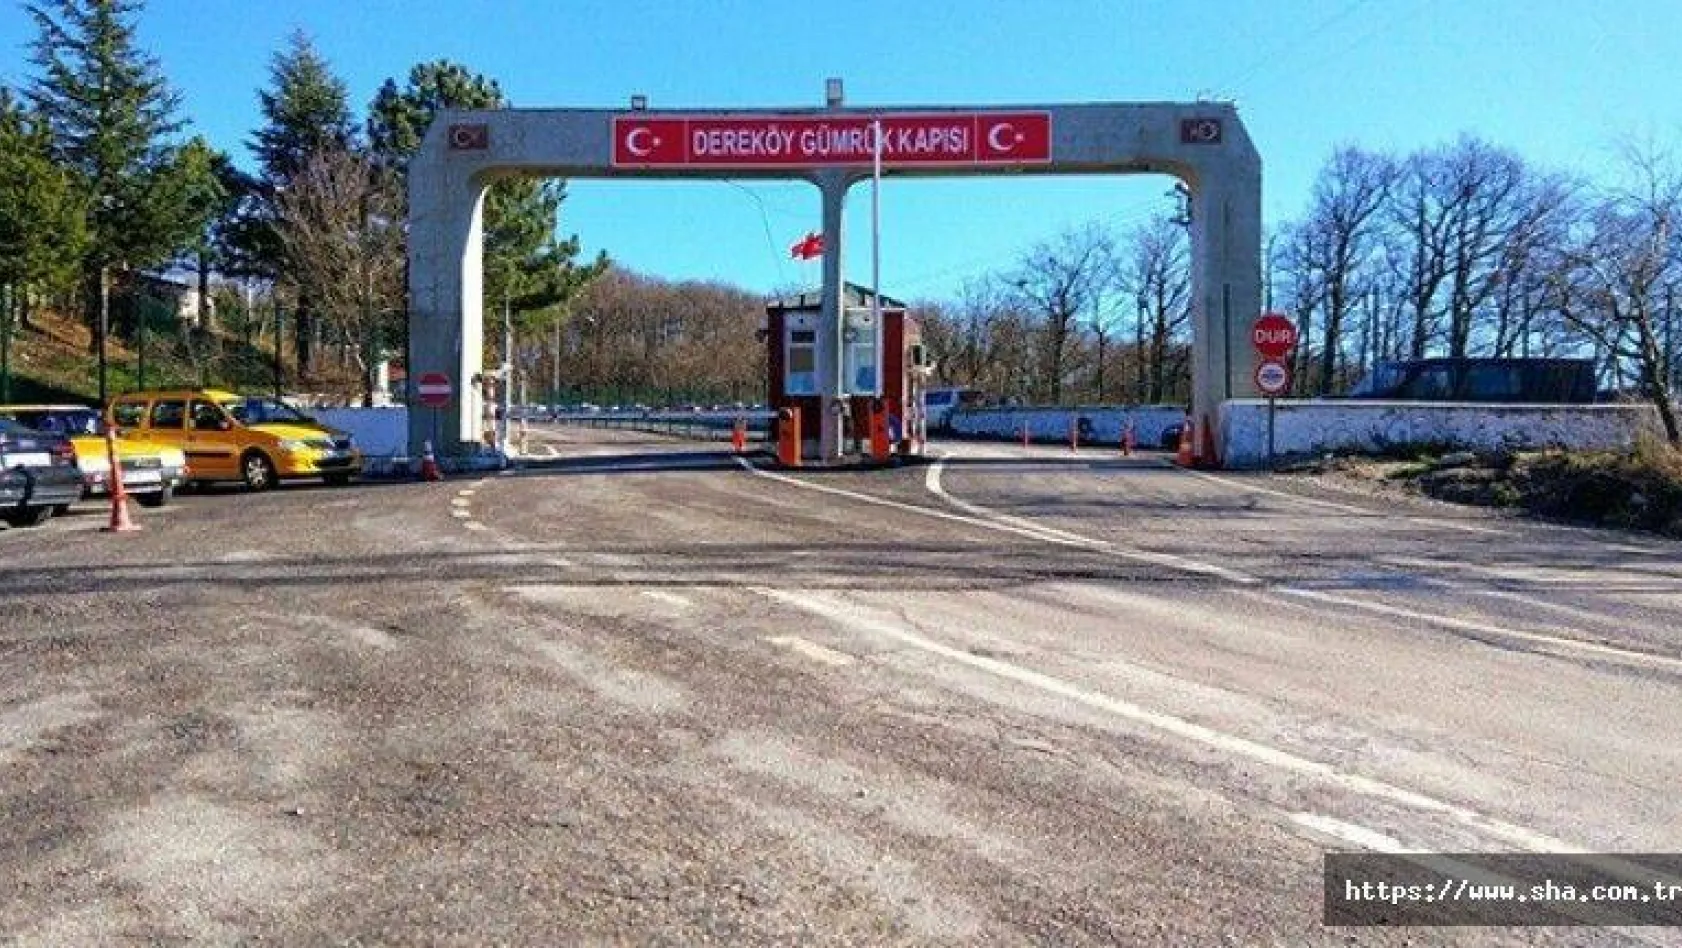 Dereköy Sınır Kapısı geçici olarak yolcu giriş-çıkışlarına kapatıldı